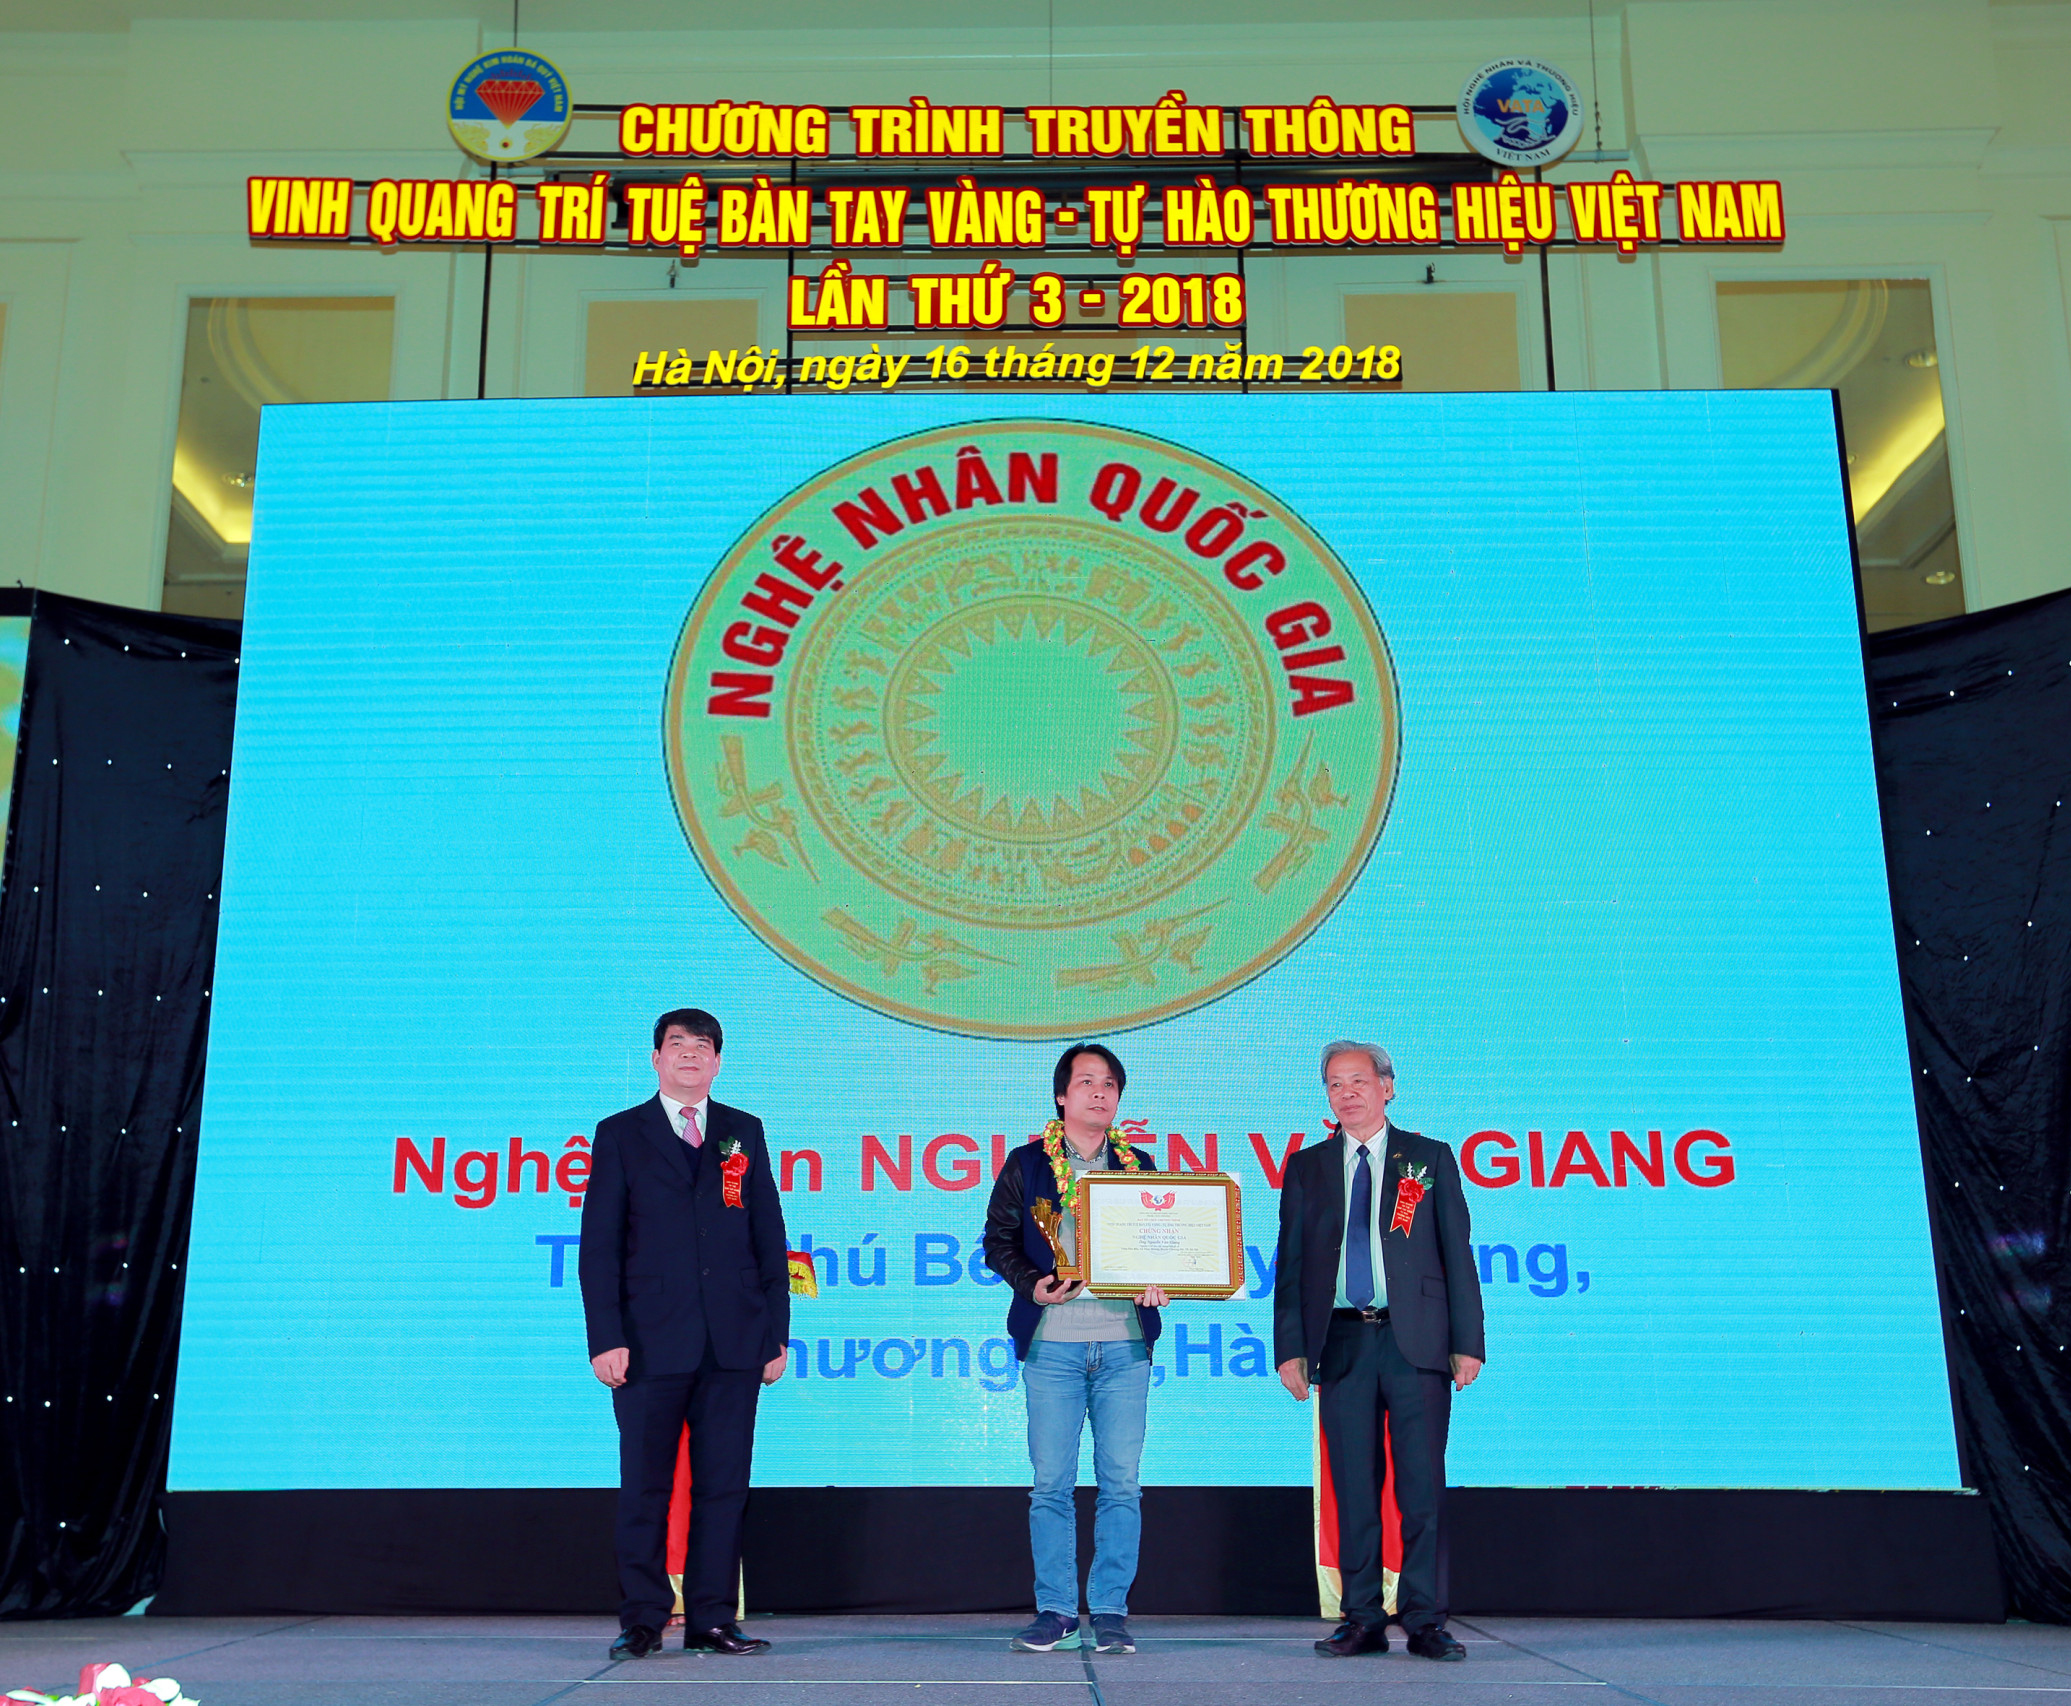 Kts Nguyễn Giang nhận danh hiệu “Nghệ Nhân Quốc Gia” , lĩnh vực : chế tác, xây dựng nhà gỗ cổ.